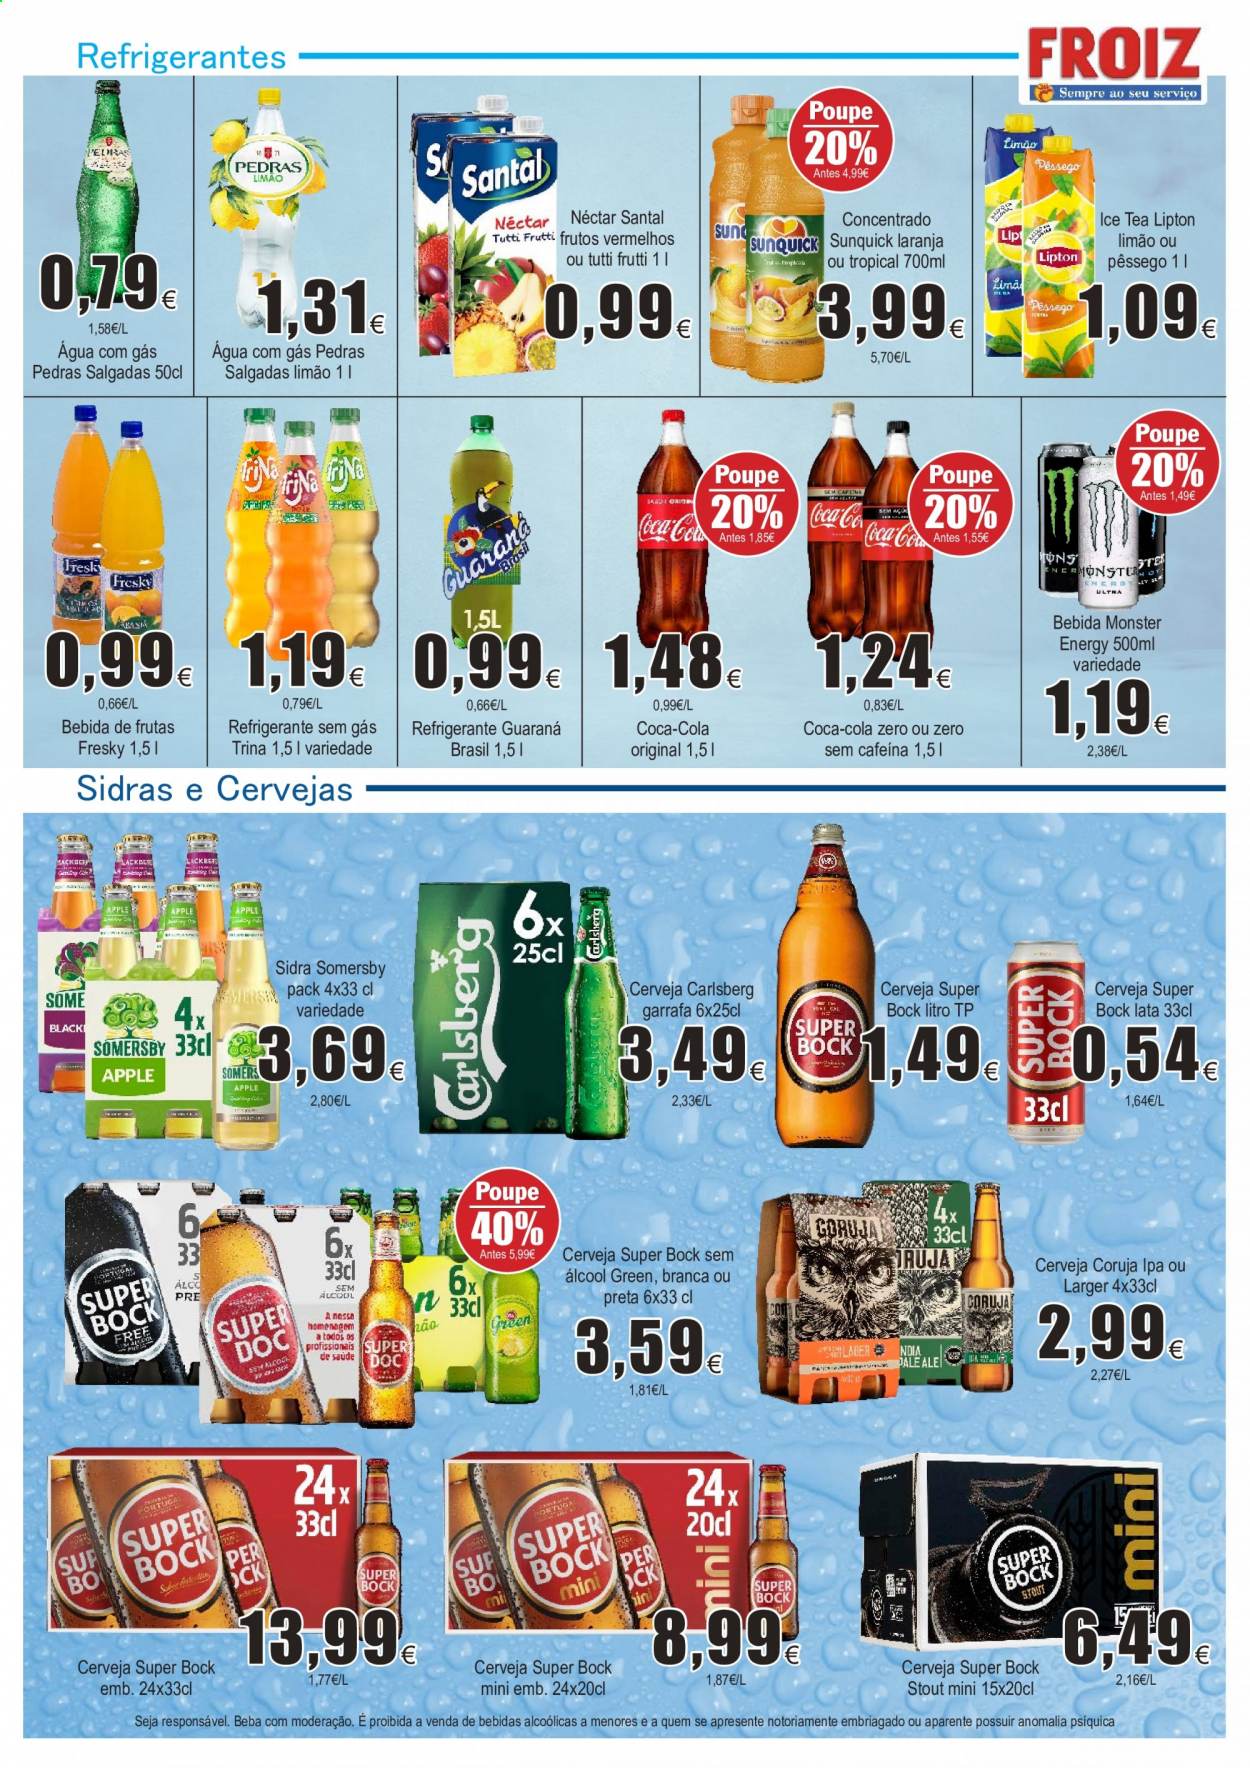 thumbnail - Folheto Froiz - 11.2.2021 - 3.3.2021 - Produtos em promoção - Super Bock, limão, Coca Cola, nectar, refrigerante, Lipton, sidra, garrafa. Página 12.